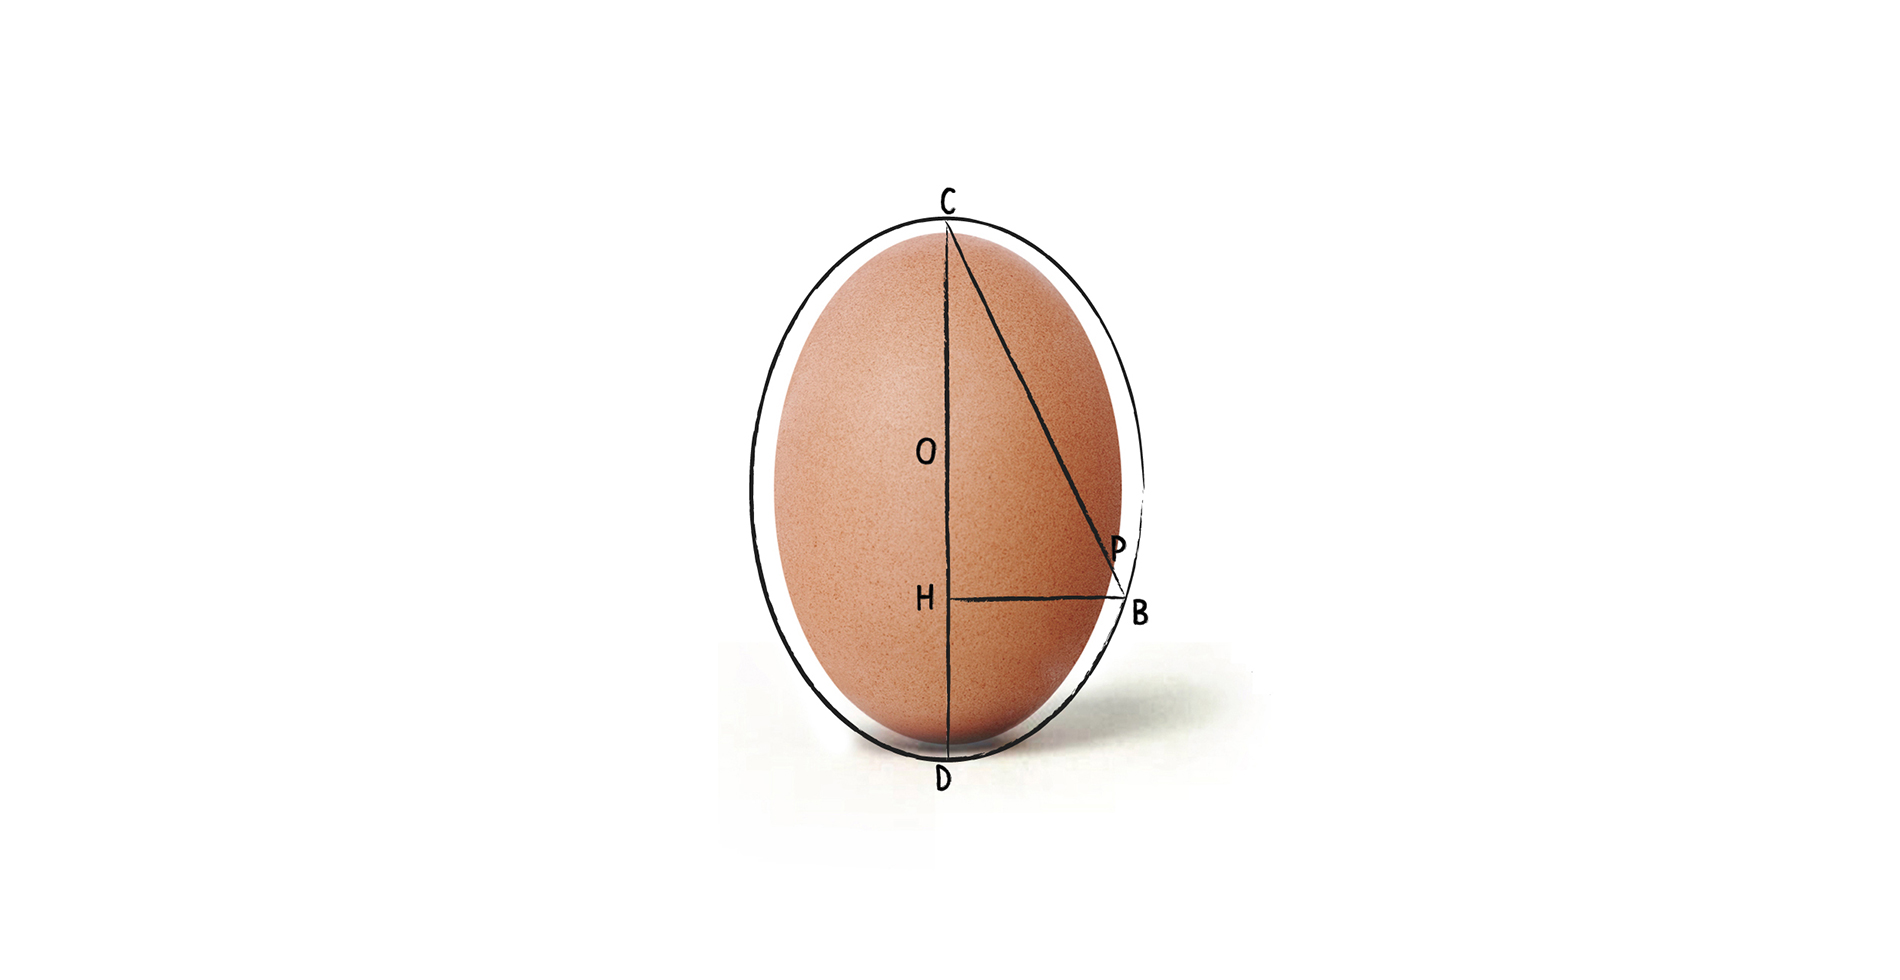 Bowl | Sanitari di ceramica inspirato uovo | Arredo bagno | Design by Antonio Pascale per Ceramica Globo